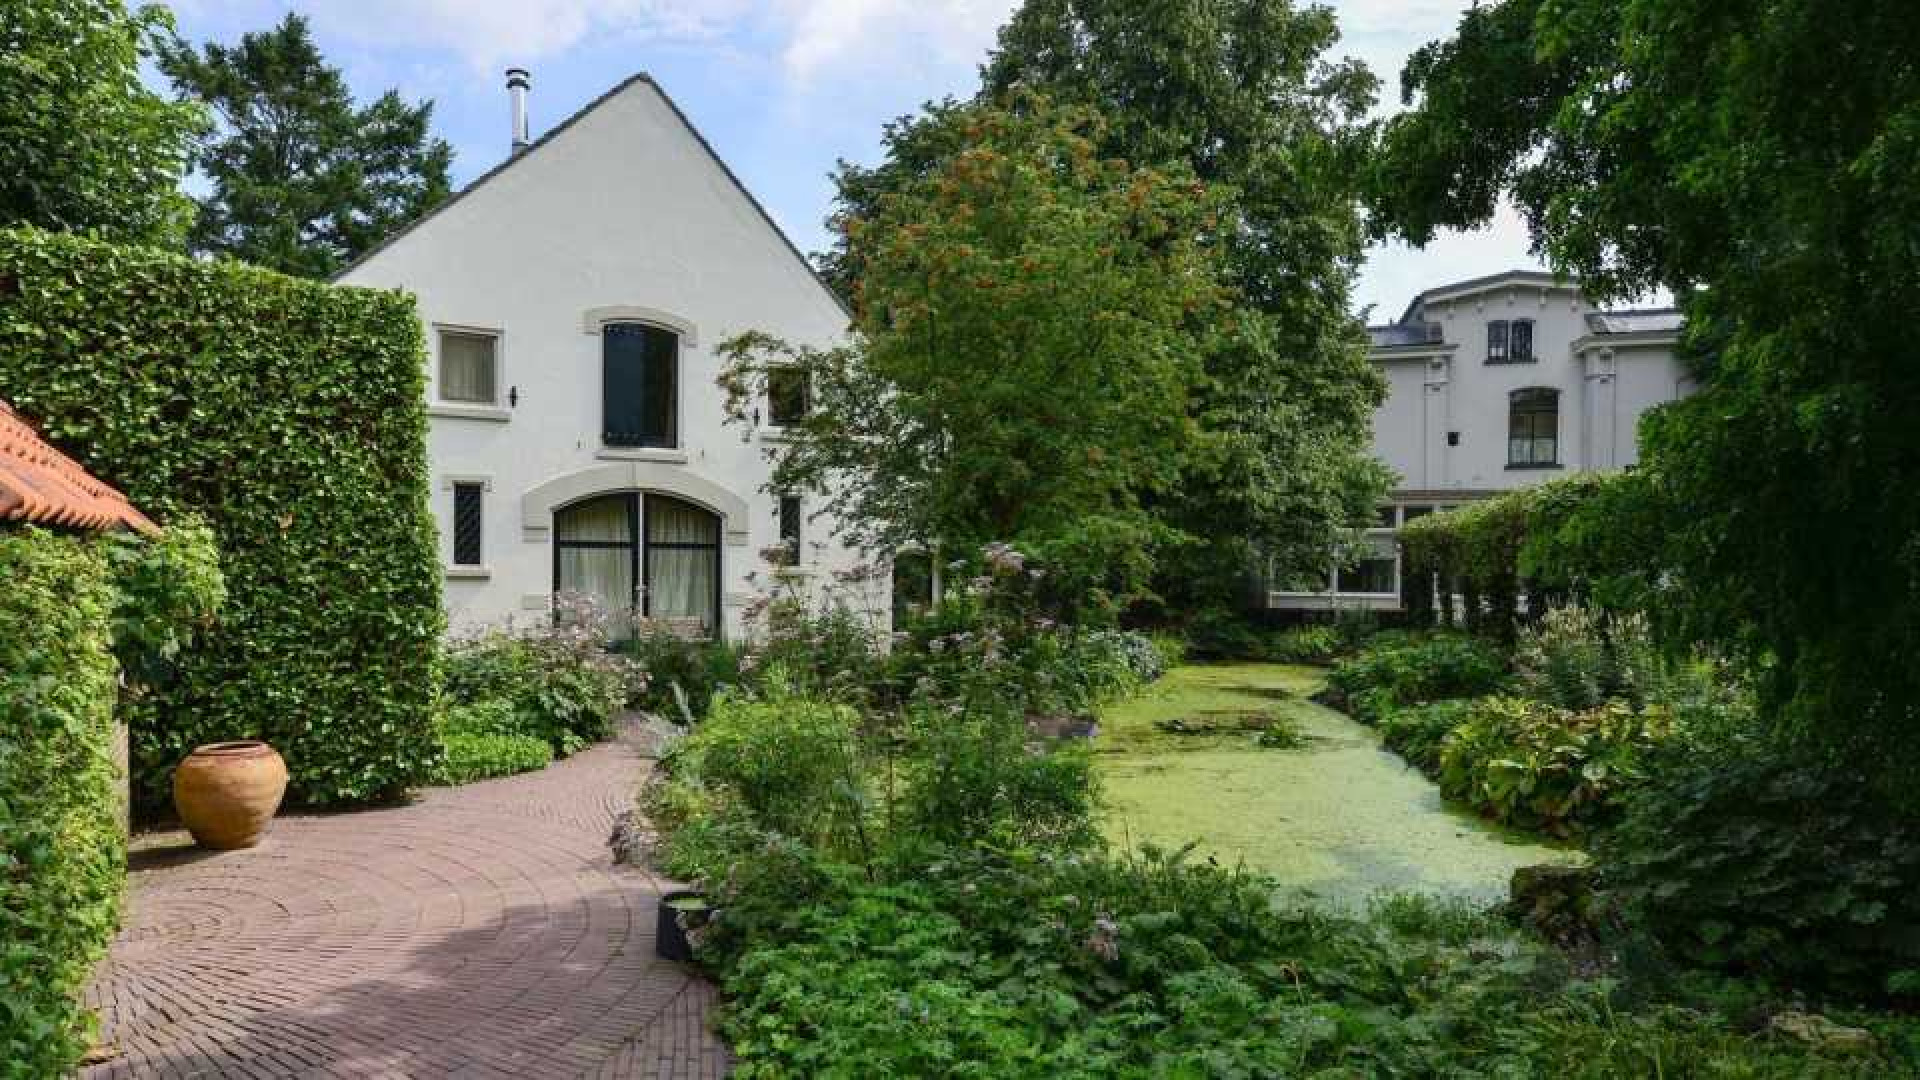 Prinses Irene verkoopt haar landhuis in Wijk bij Duurstede. Zie foto's 7